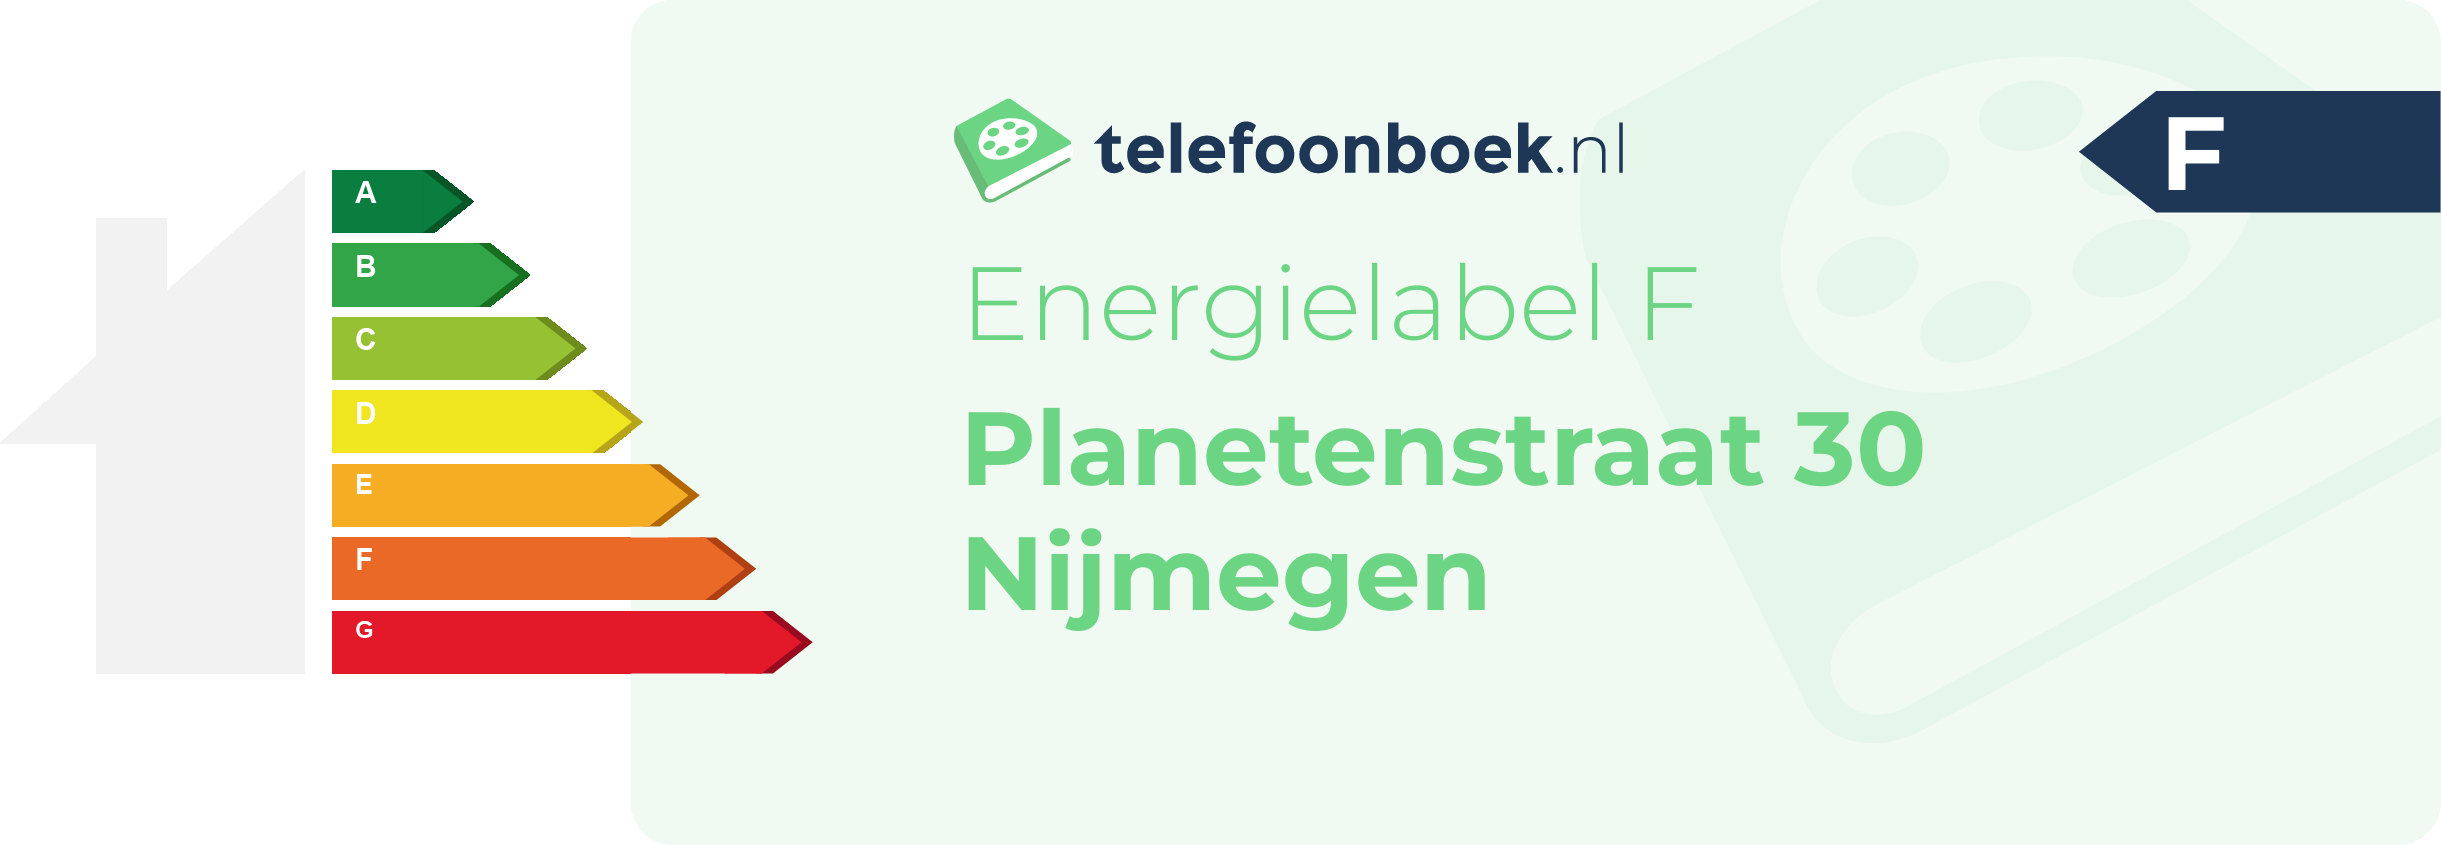 Energielabel Planetenstraat 30 Nijmegen